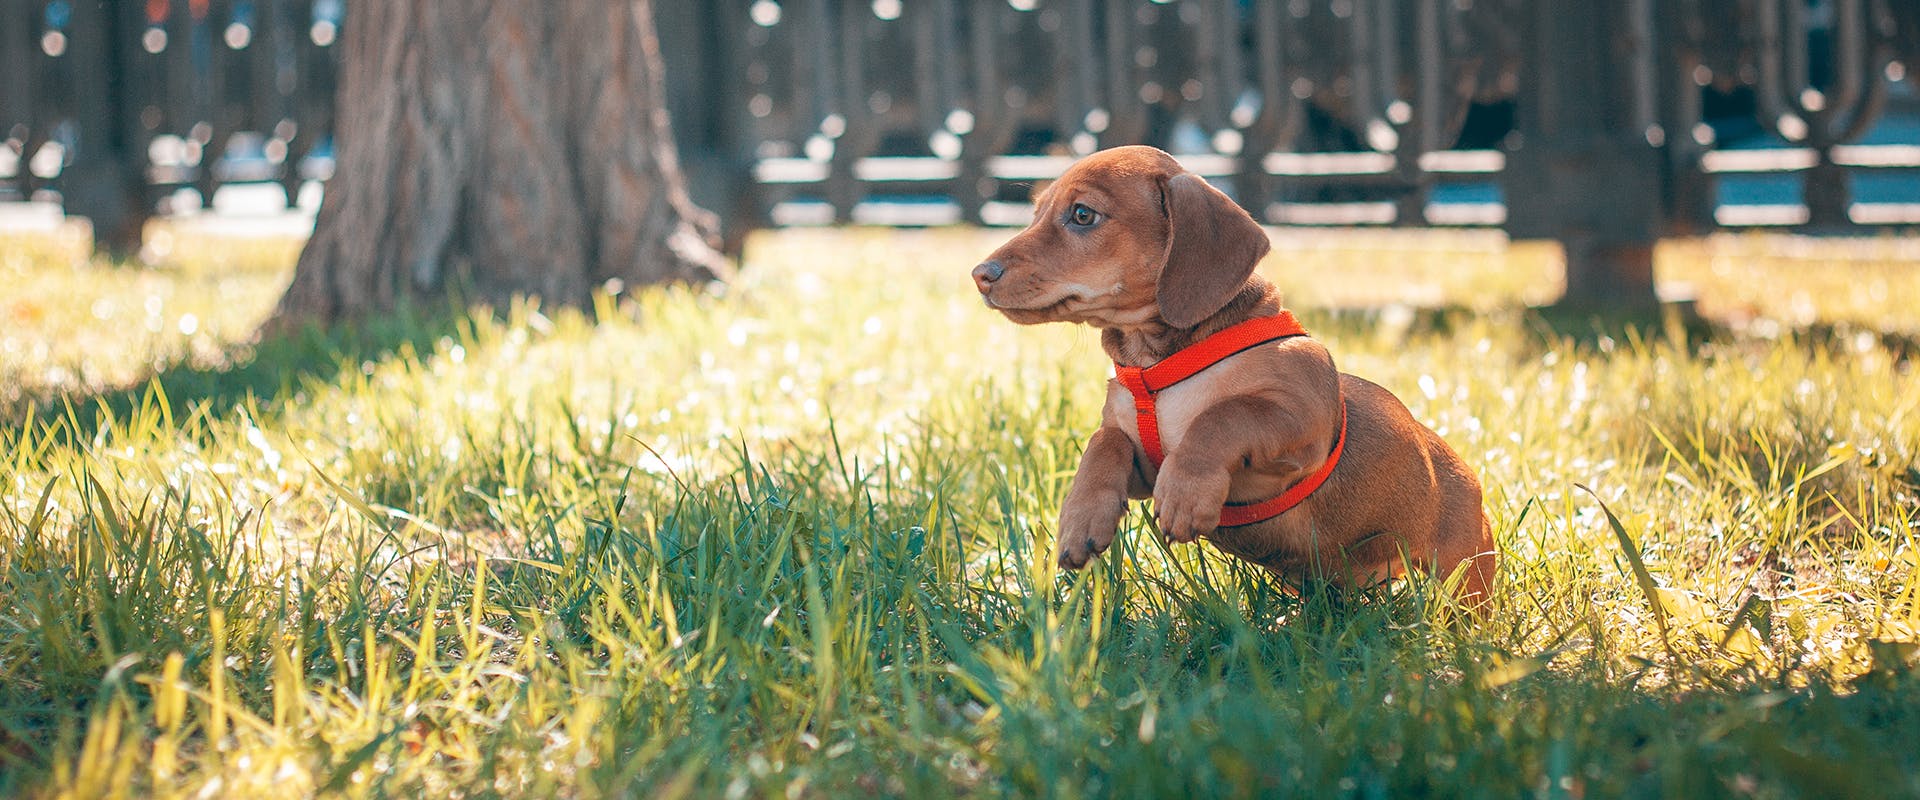 A dog wearing a dog harness running through grass